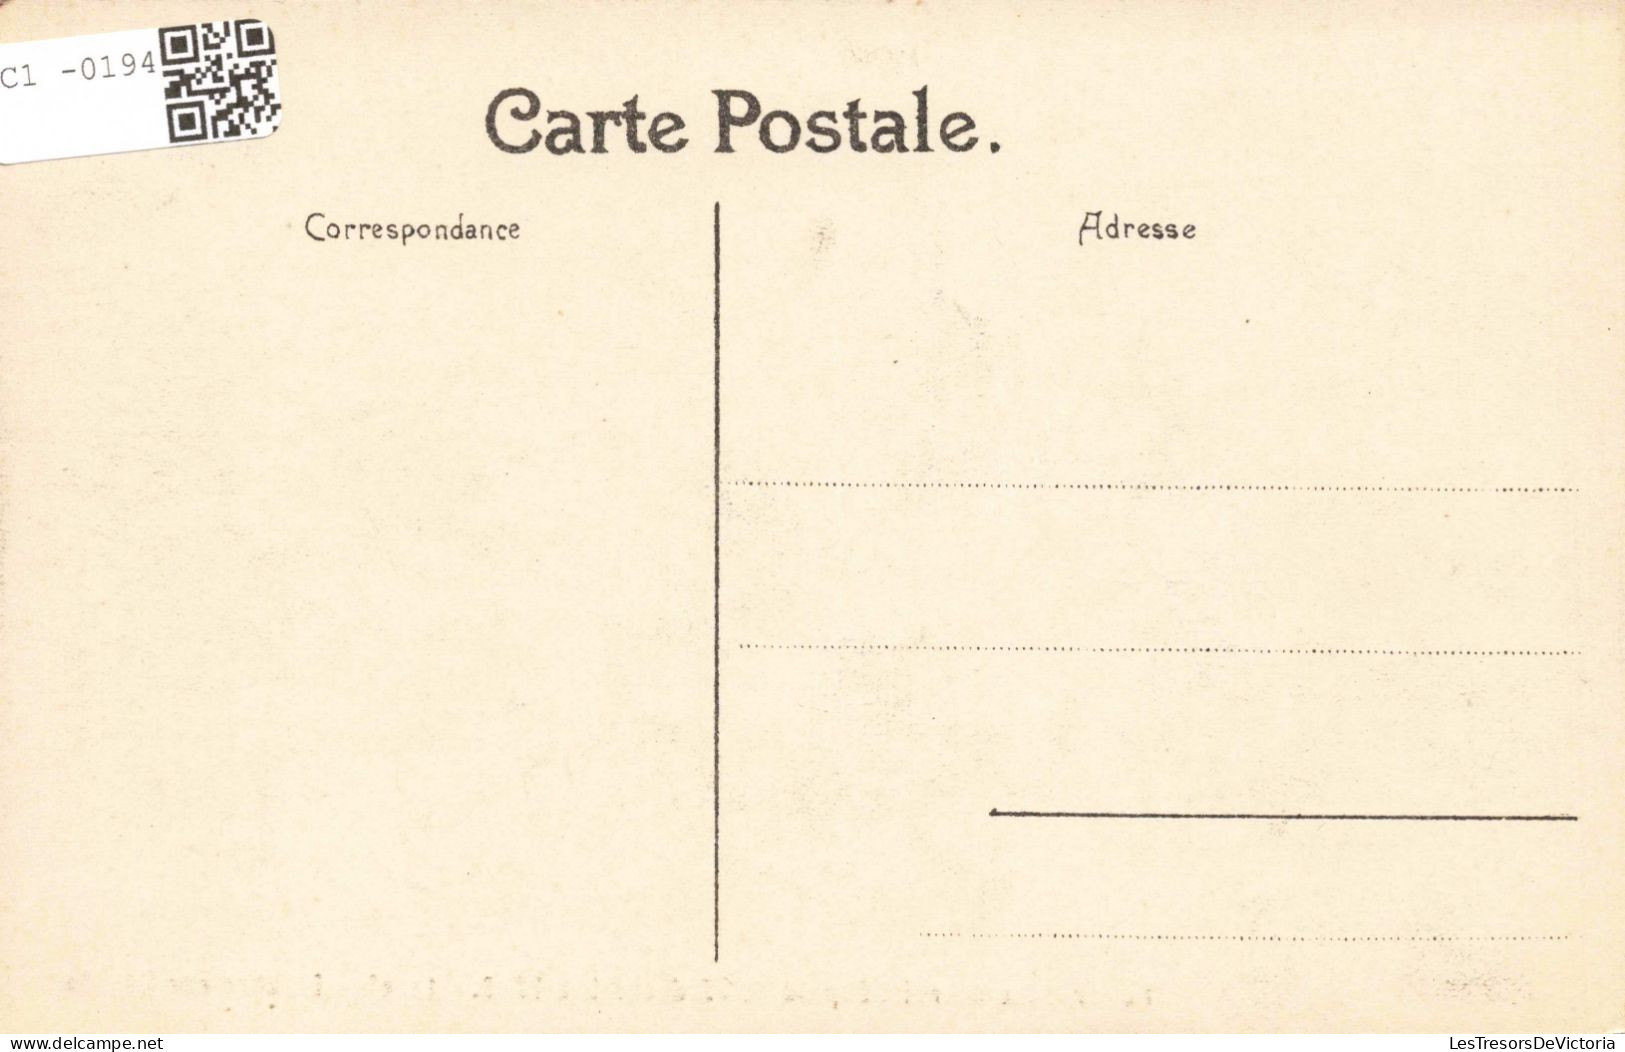 FAMILLES ROYALES - Funérailles Du Roi Léopold II, 22 Décembre 1909 - Le Char Funèbre Rue Royale - Carte Postale Ancienne - Königshäuser